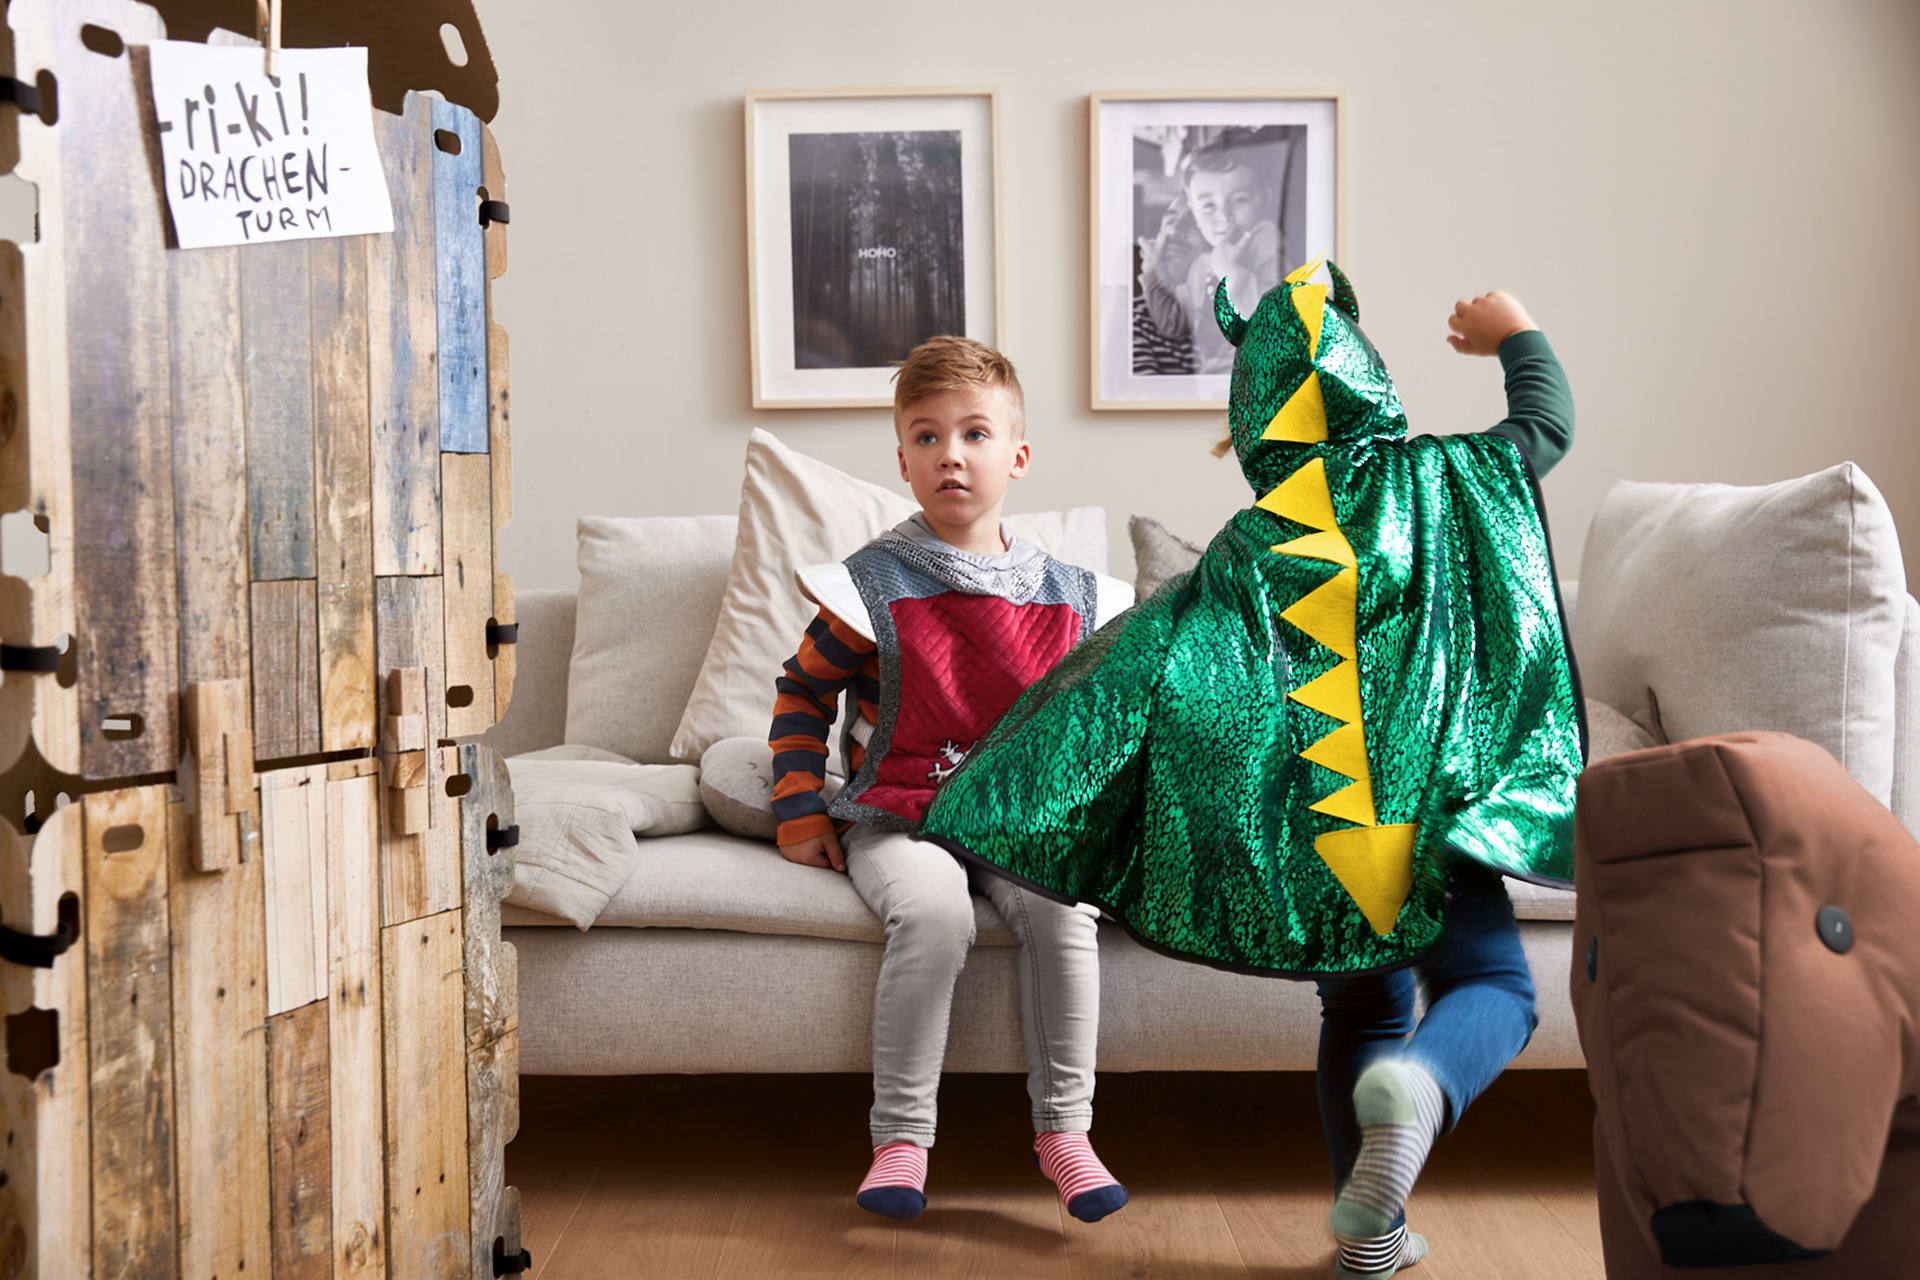 Kostümideen für Kinder selber machen - mehr als DIY-Ideen 